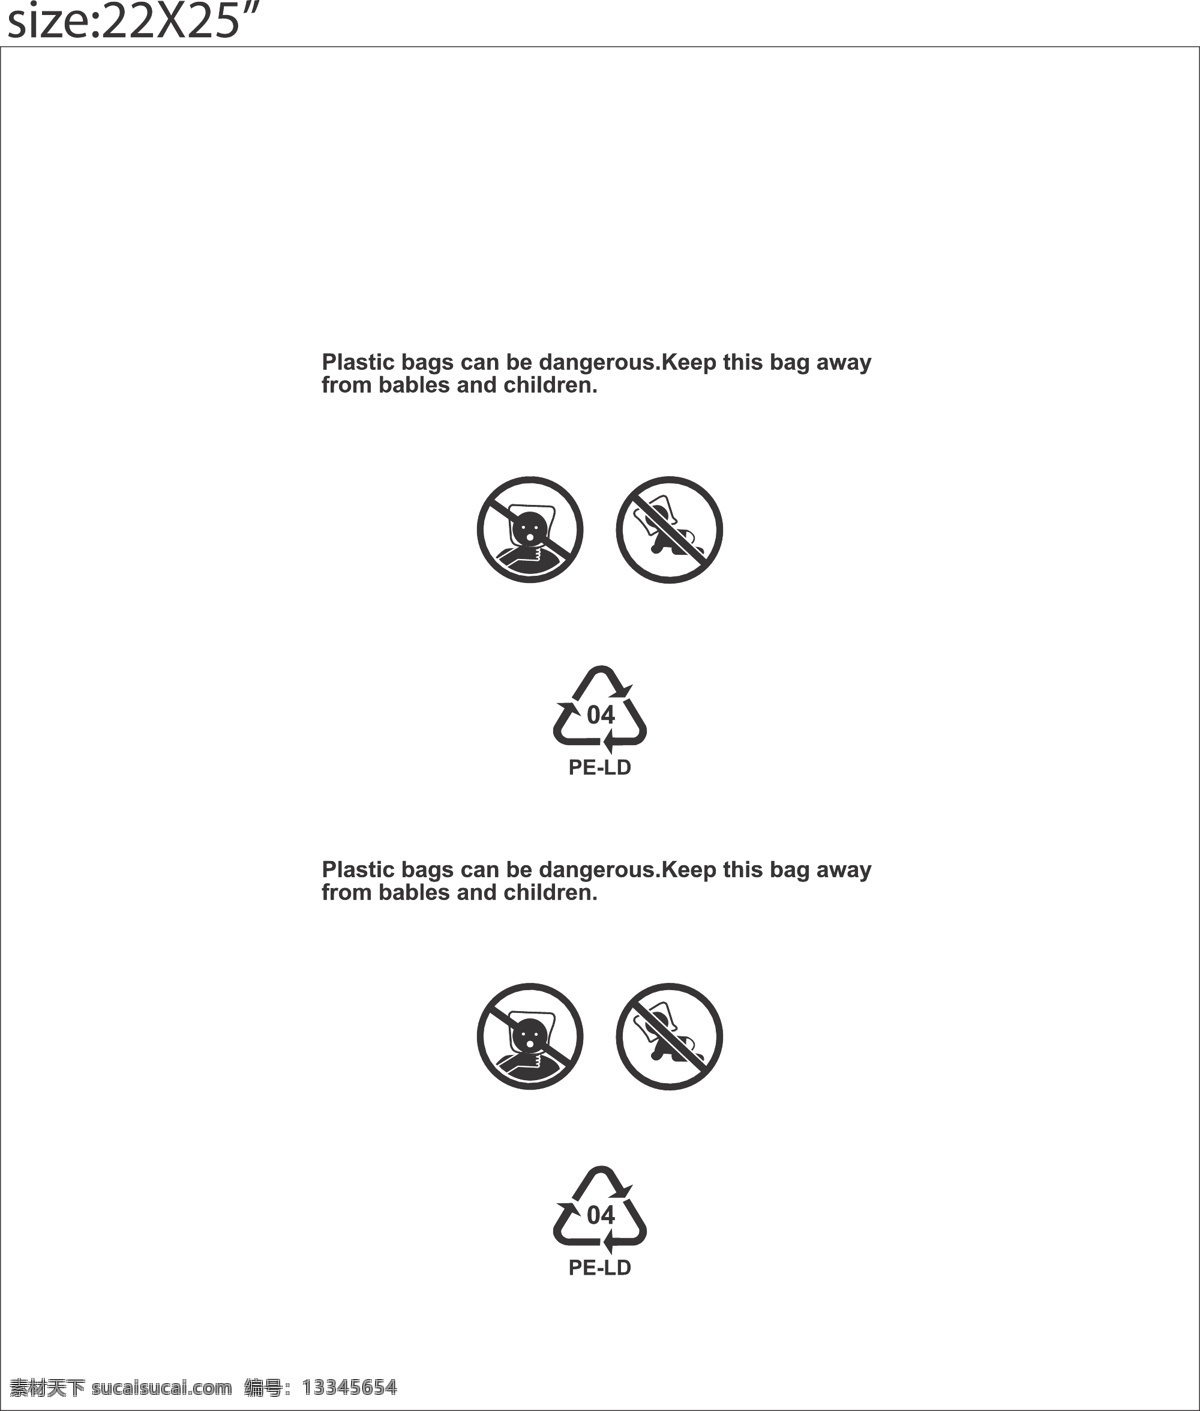 环保标志 胶袋警示语 opp警示语 pe袋警告语 警句图 设计图 公共标识标志 标识标志图标 矢量